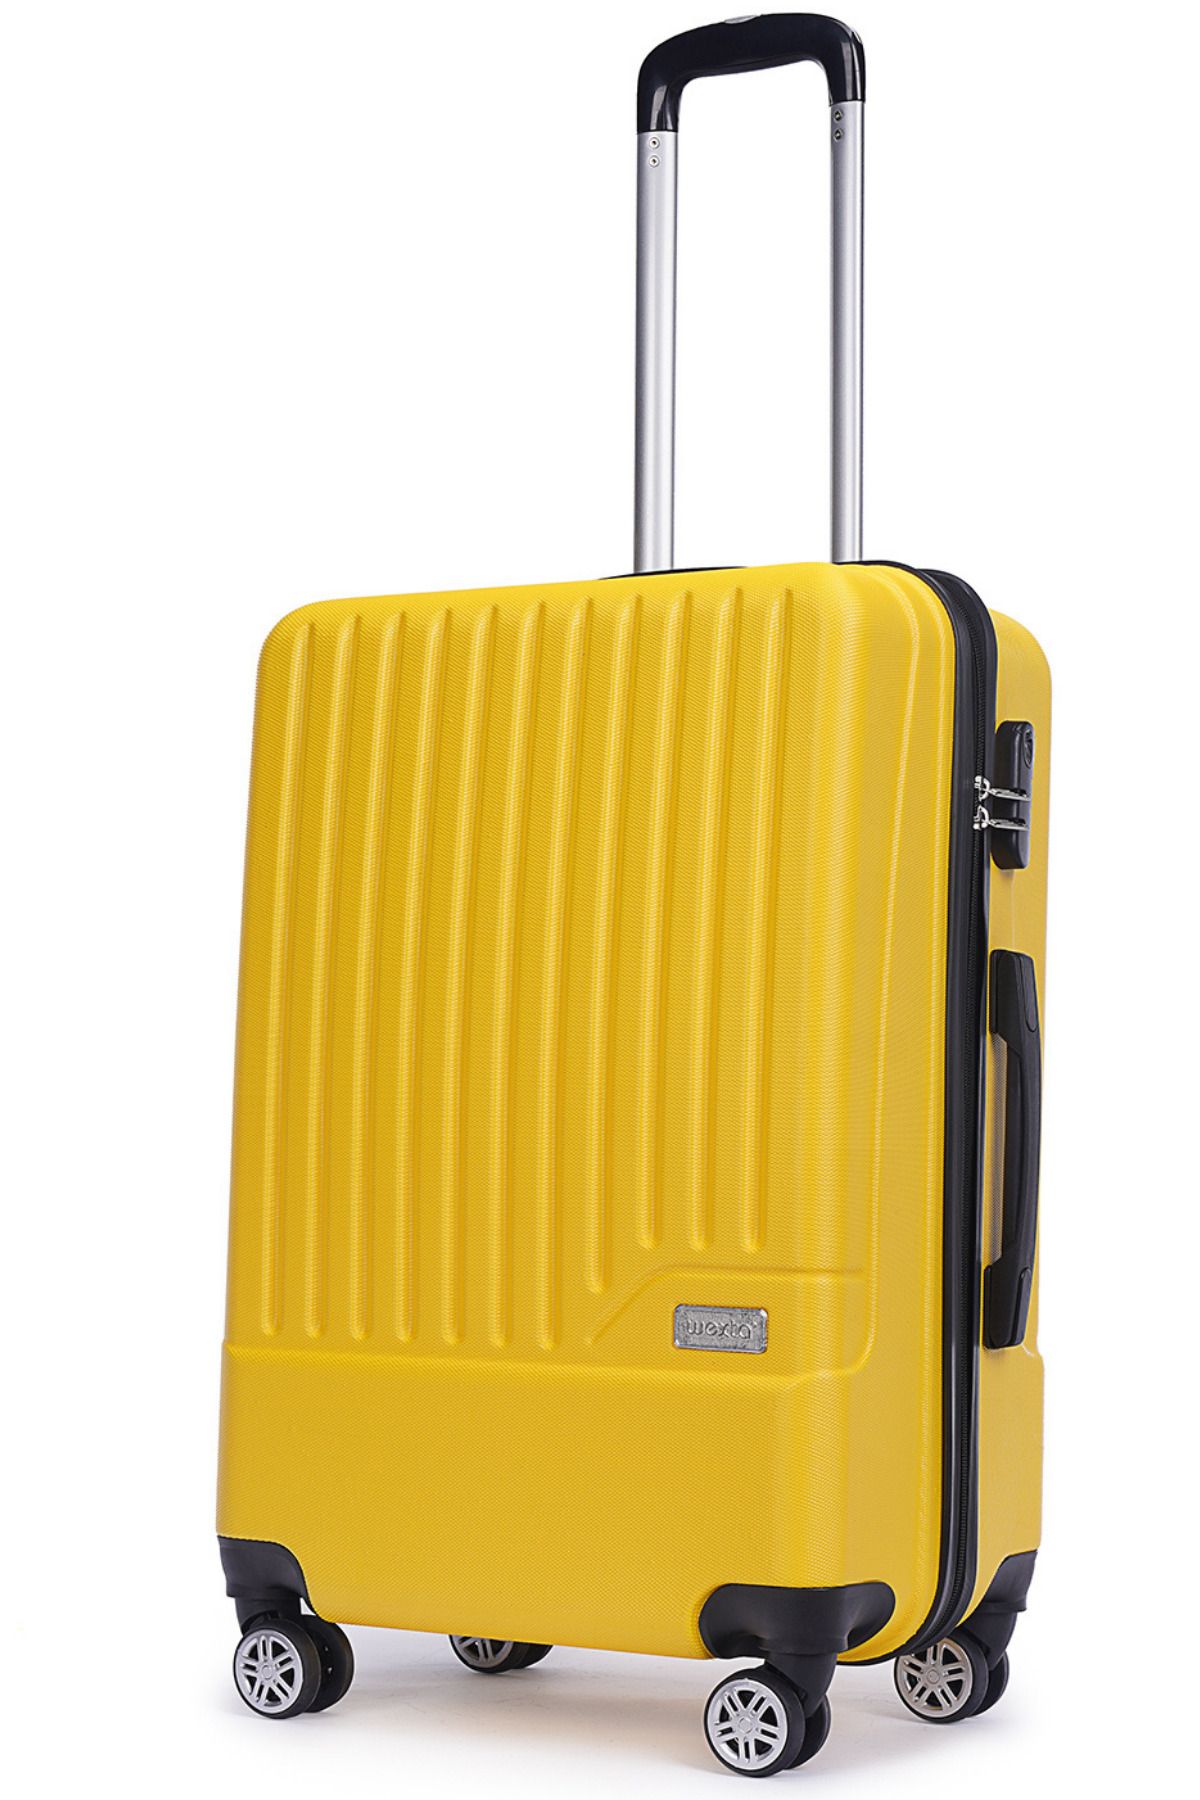 Wexta Wx-230 Sarı Orta Boy Valiz /Seyahat Bavulu